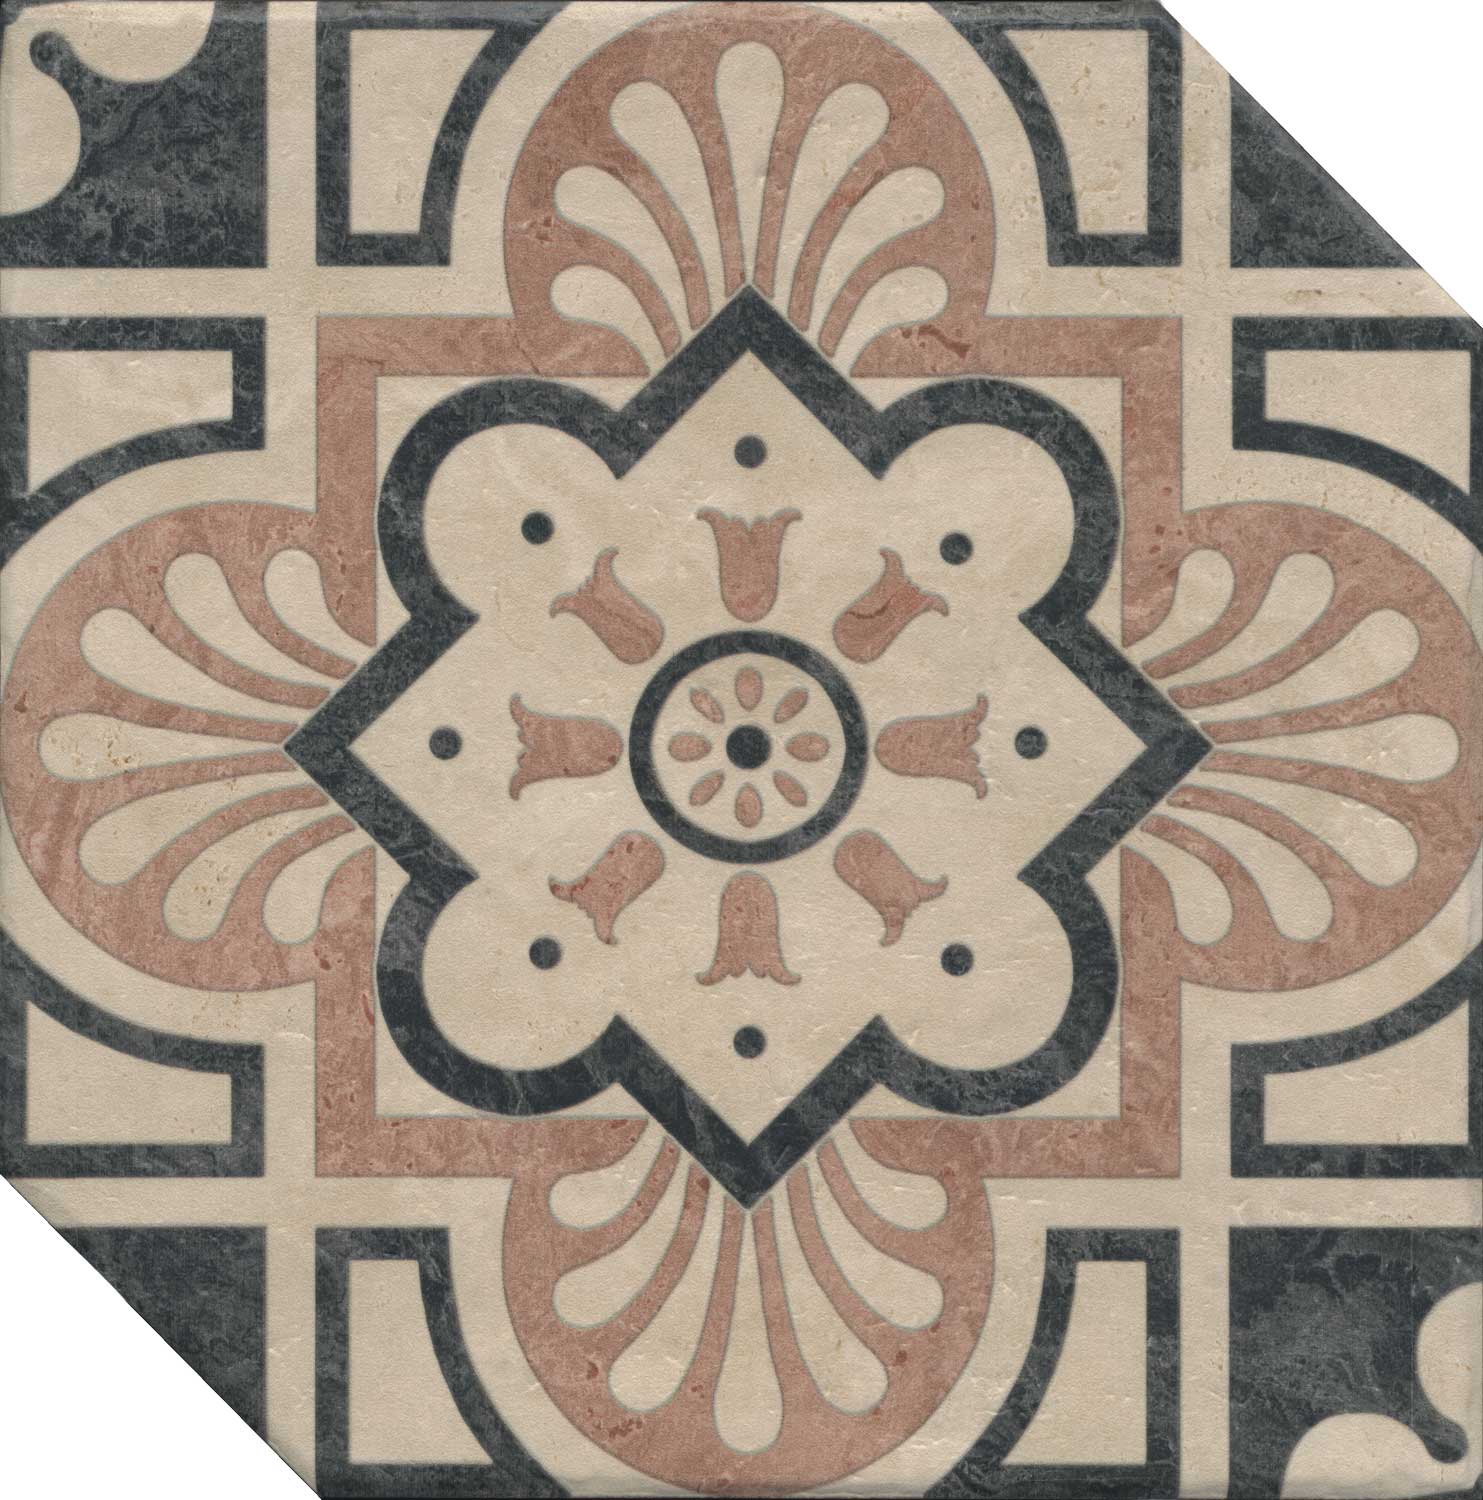 Керамогранит Интарсио декорированный 33x33